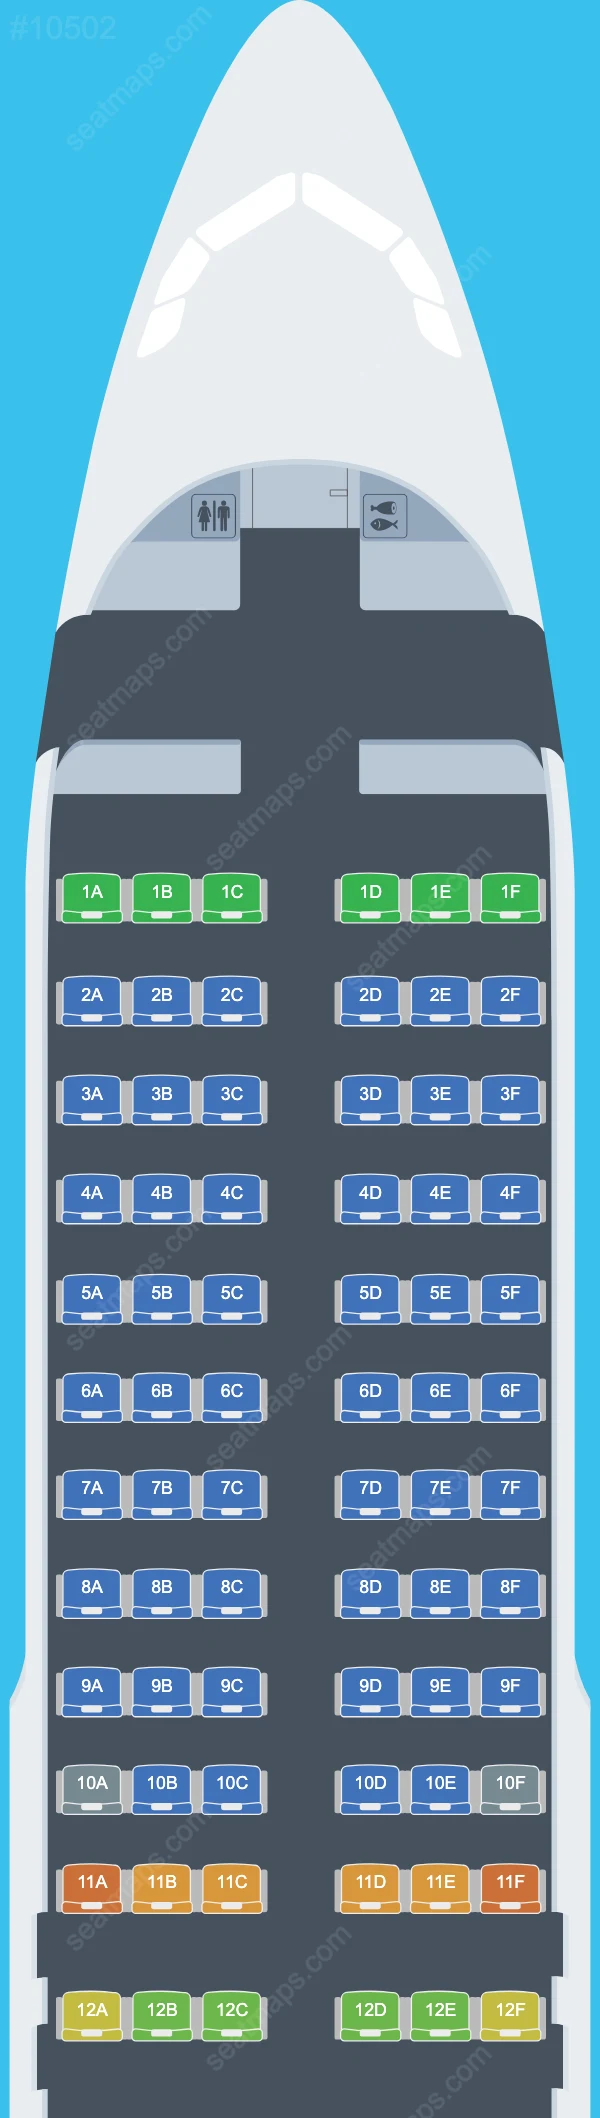 Meraj Air Airbus A320 Seat Maps A320-200 V.3